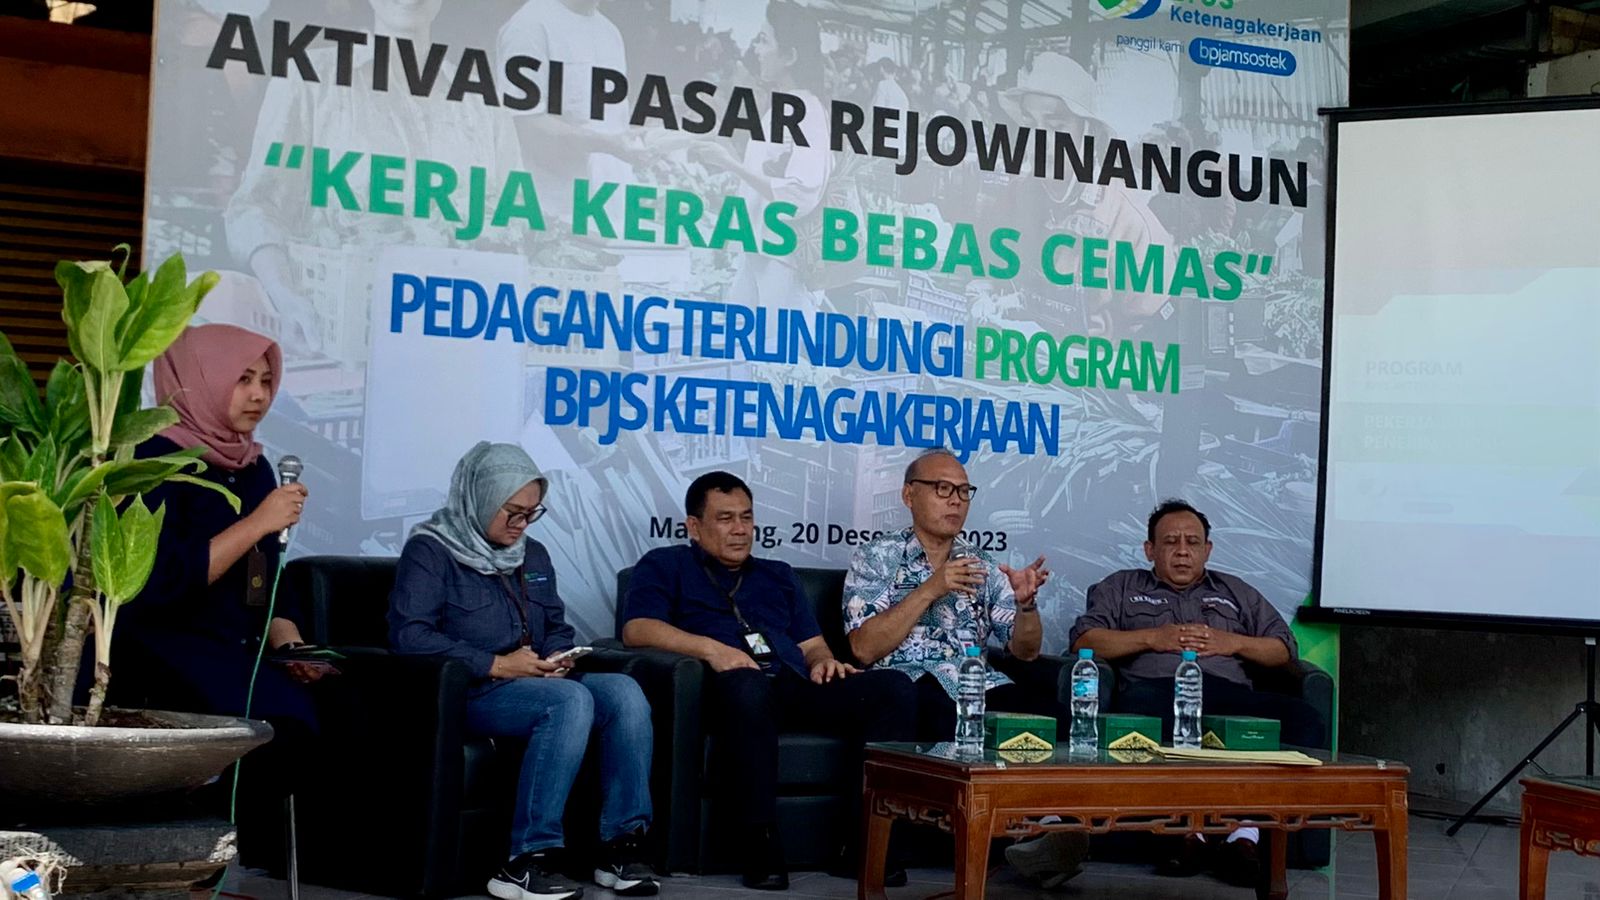 BP Jamsostek Magelang Sosialisasi Aktivasi Pasar Rejowinangun Kota Magelang